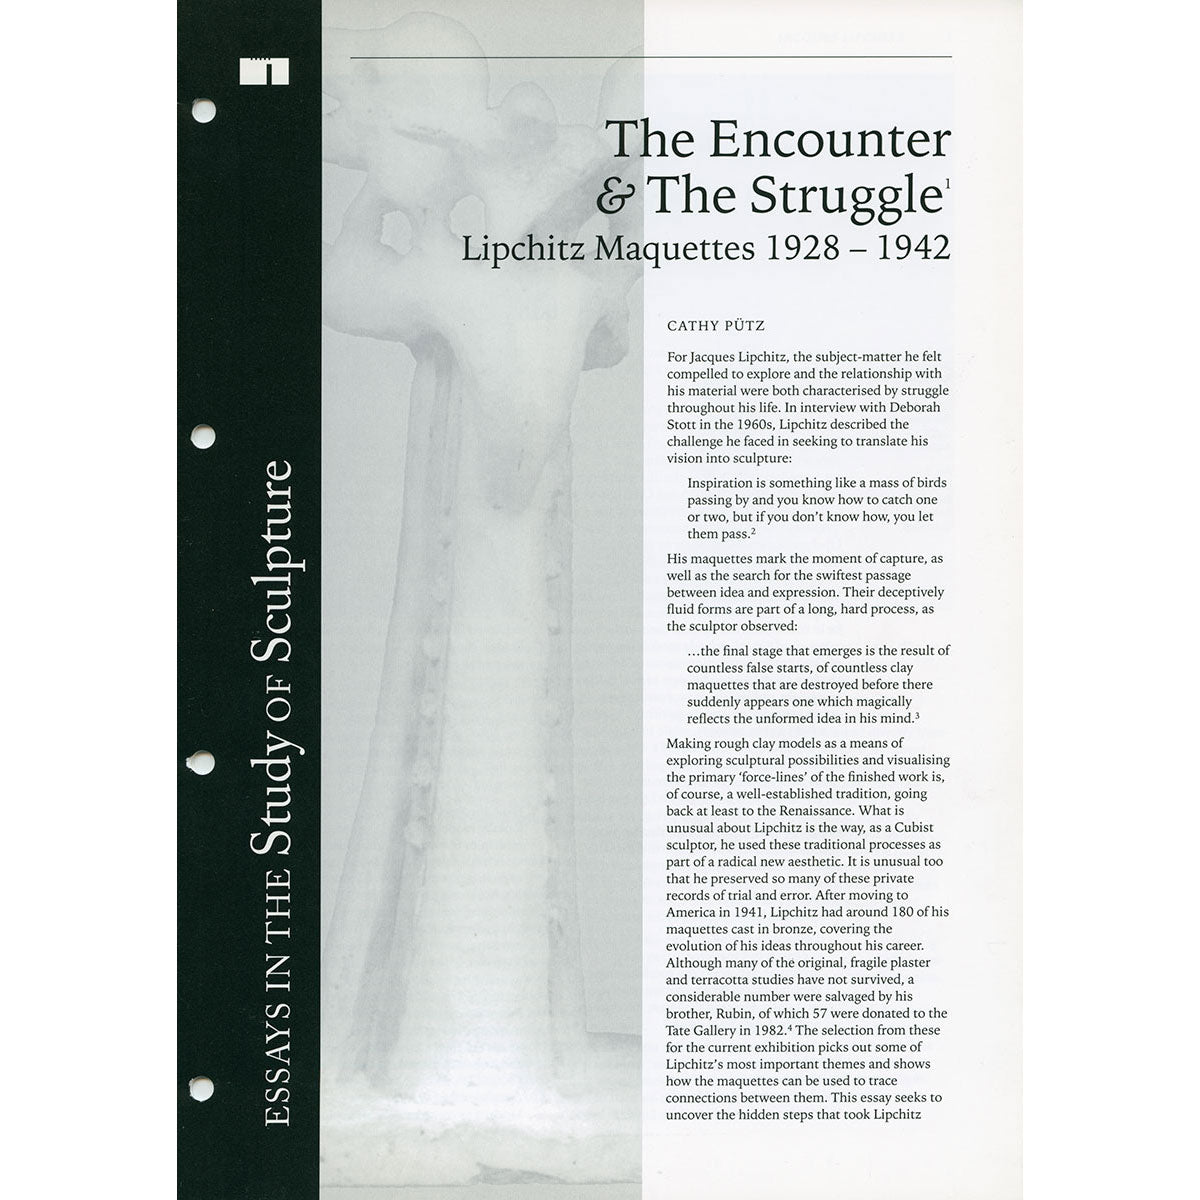 The Encounter & The Struggle: Lipchitz Maquettes 1928 - 1942 (No. 26)